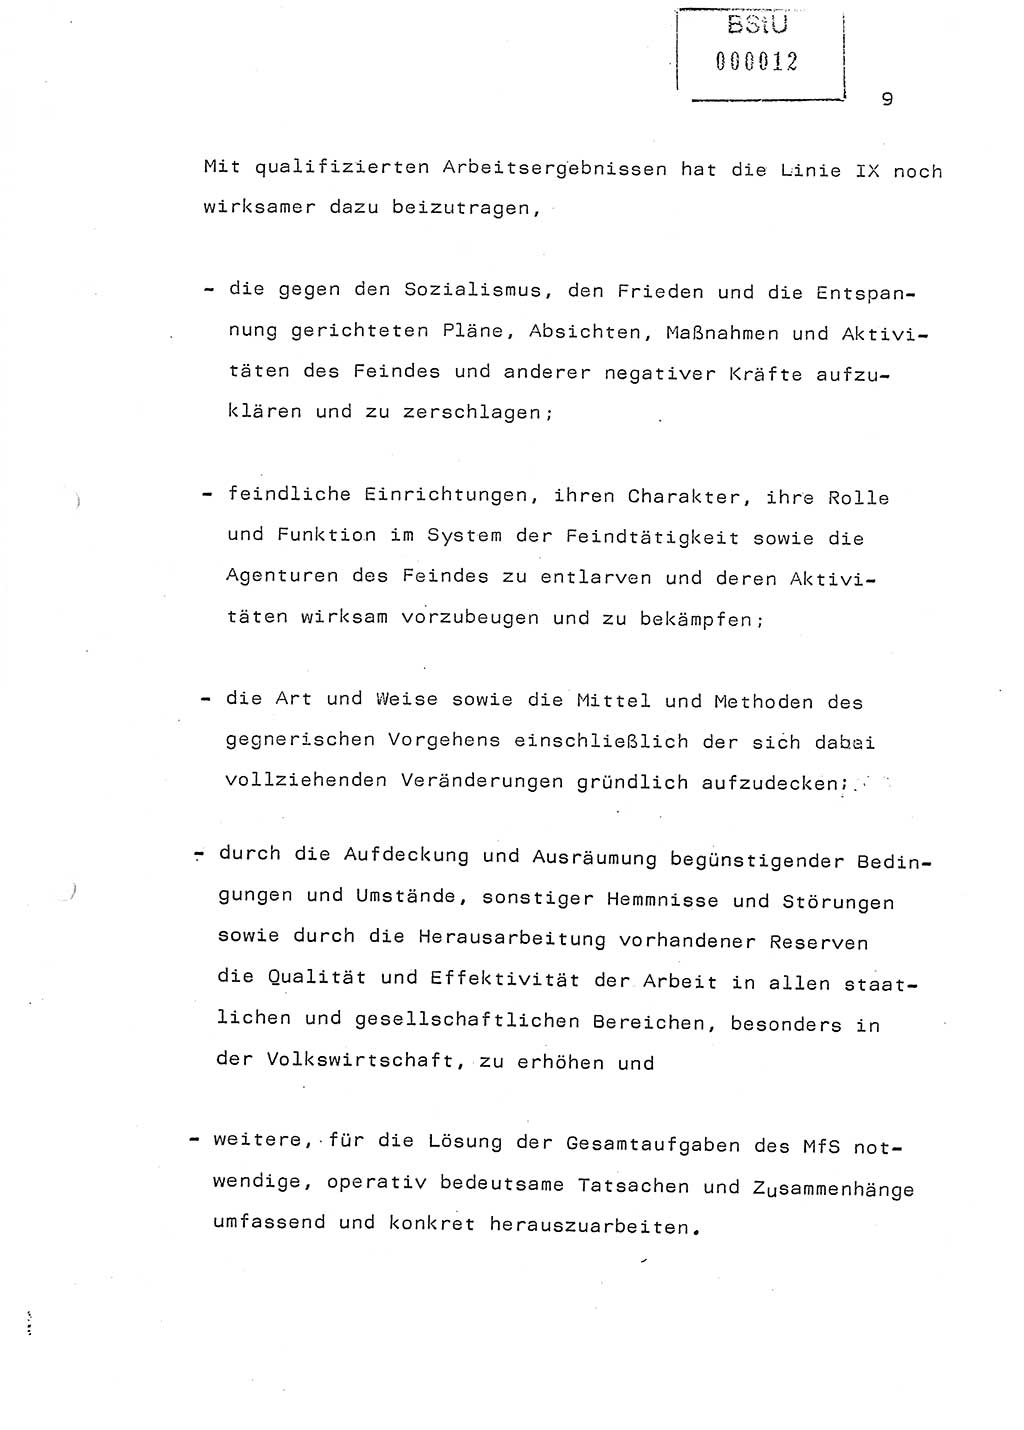 Referat (Generaloberst Erich Mielke) auf der Zentralen Dienstkonferenz am 24.5.1979 [Ministerium für Staatssicherheit (MfS), Deutsche Demokratische Republik (DDR), Der Minister], Berlin 1979, Seite 9 (Ref. DK DDR MfS Min. /79 1979, S. 9)